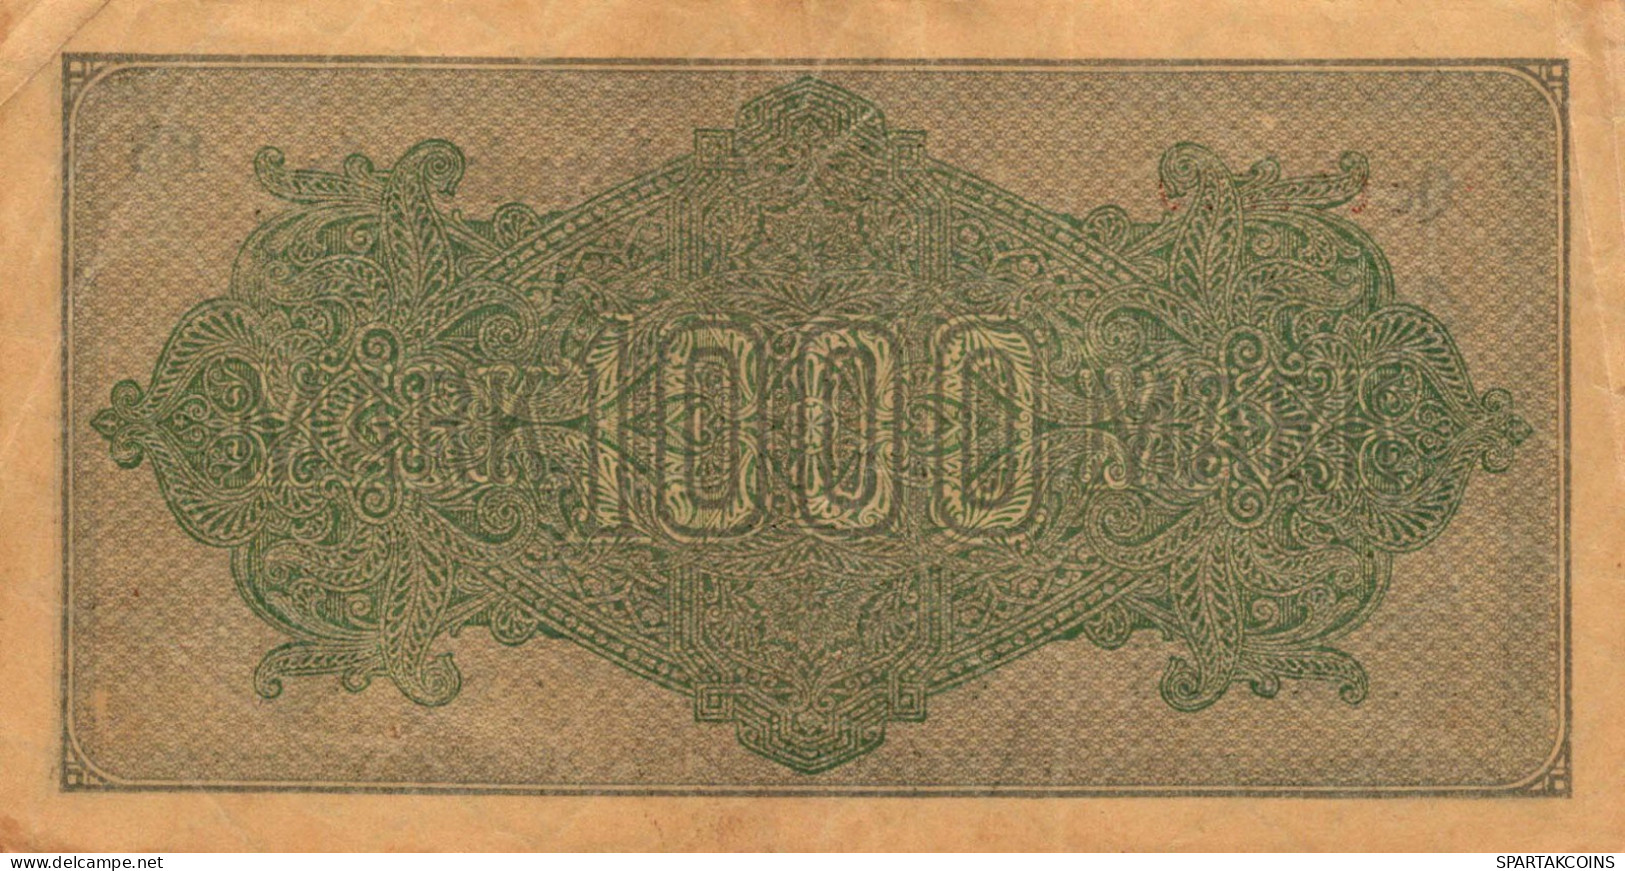 1000 MARK 1922 Stadt BERLIN DEUTSCHLAND Papiergeld Banknote #PL032 - [11] Emissions Locales